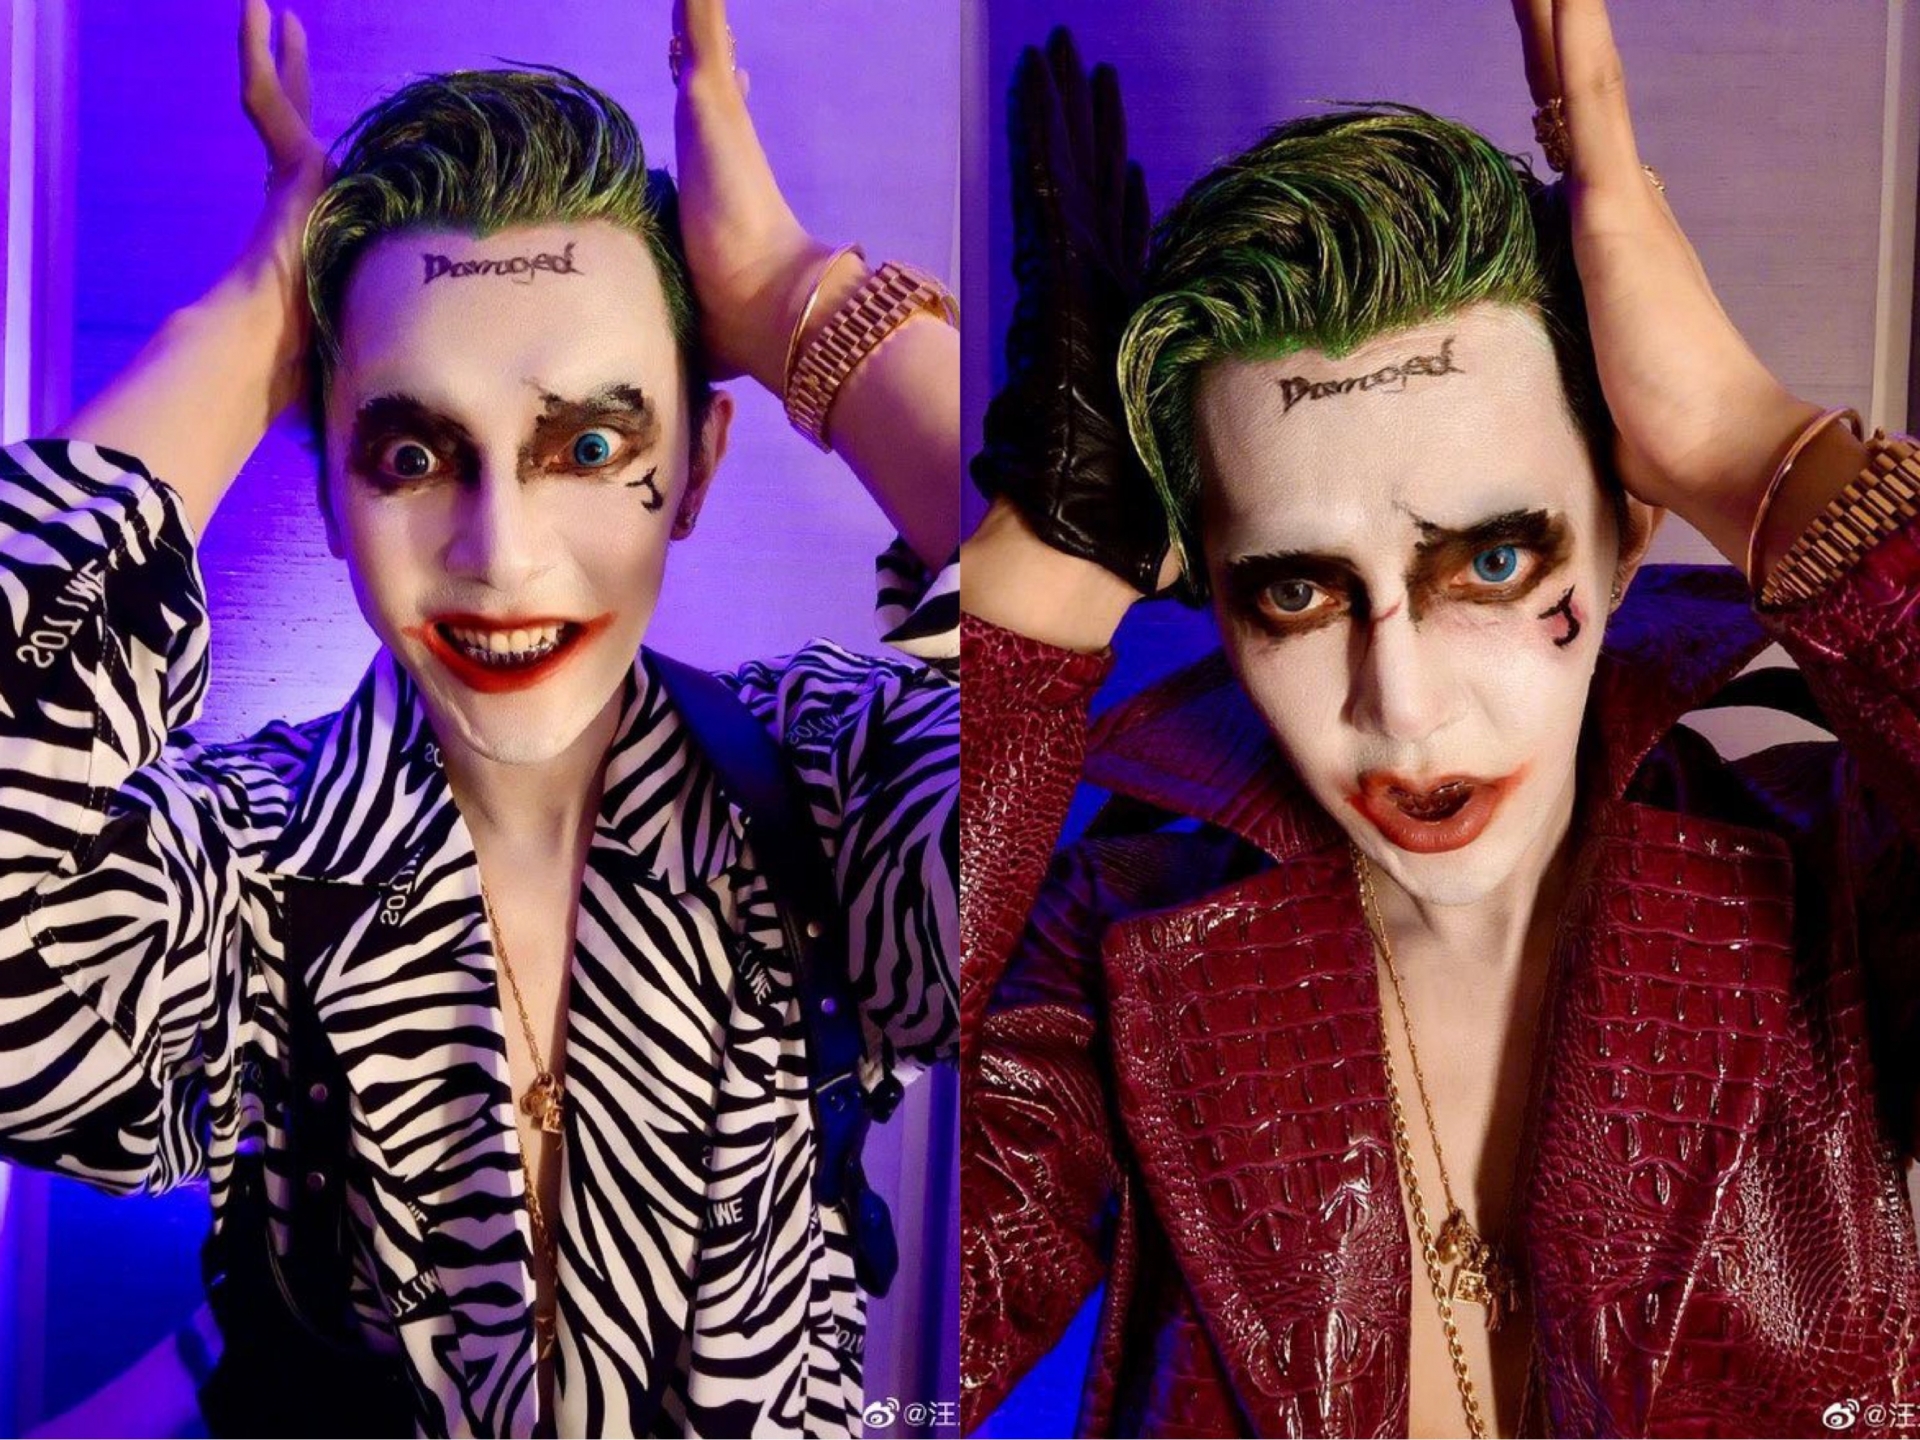 Cũng hoá thành Joker nhưng ông chú U40 Uông Đông Thành lại khiến fan 'thất kinh' với đôi mắt 2 màu trợn trừng vô cùng ám ảnh.